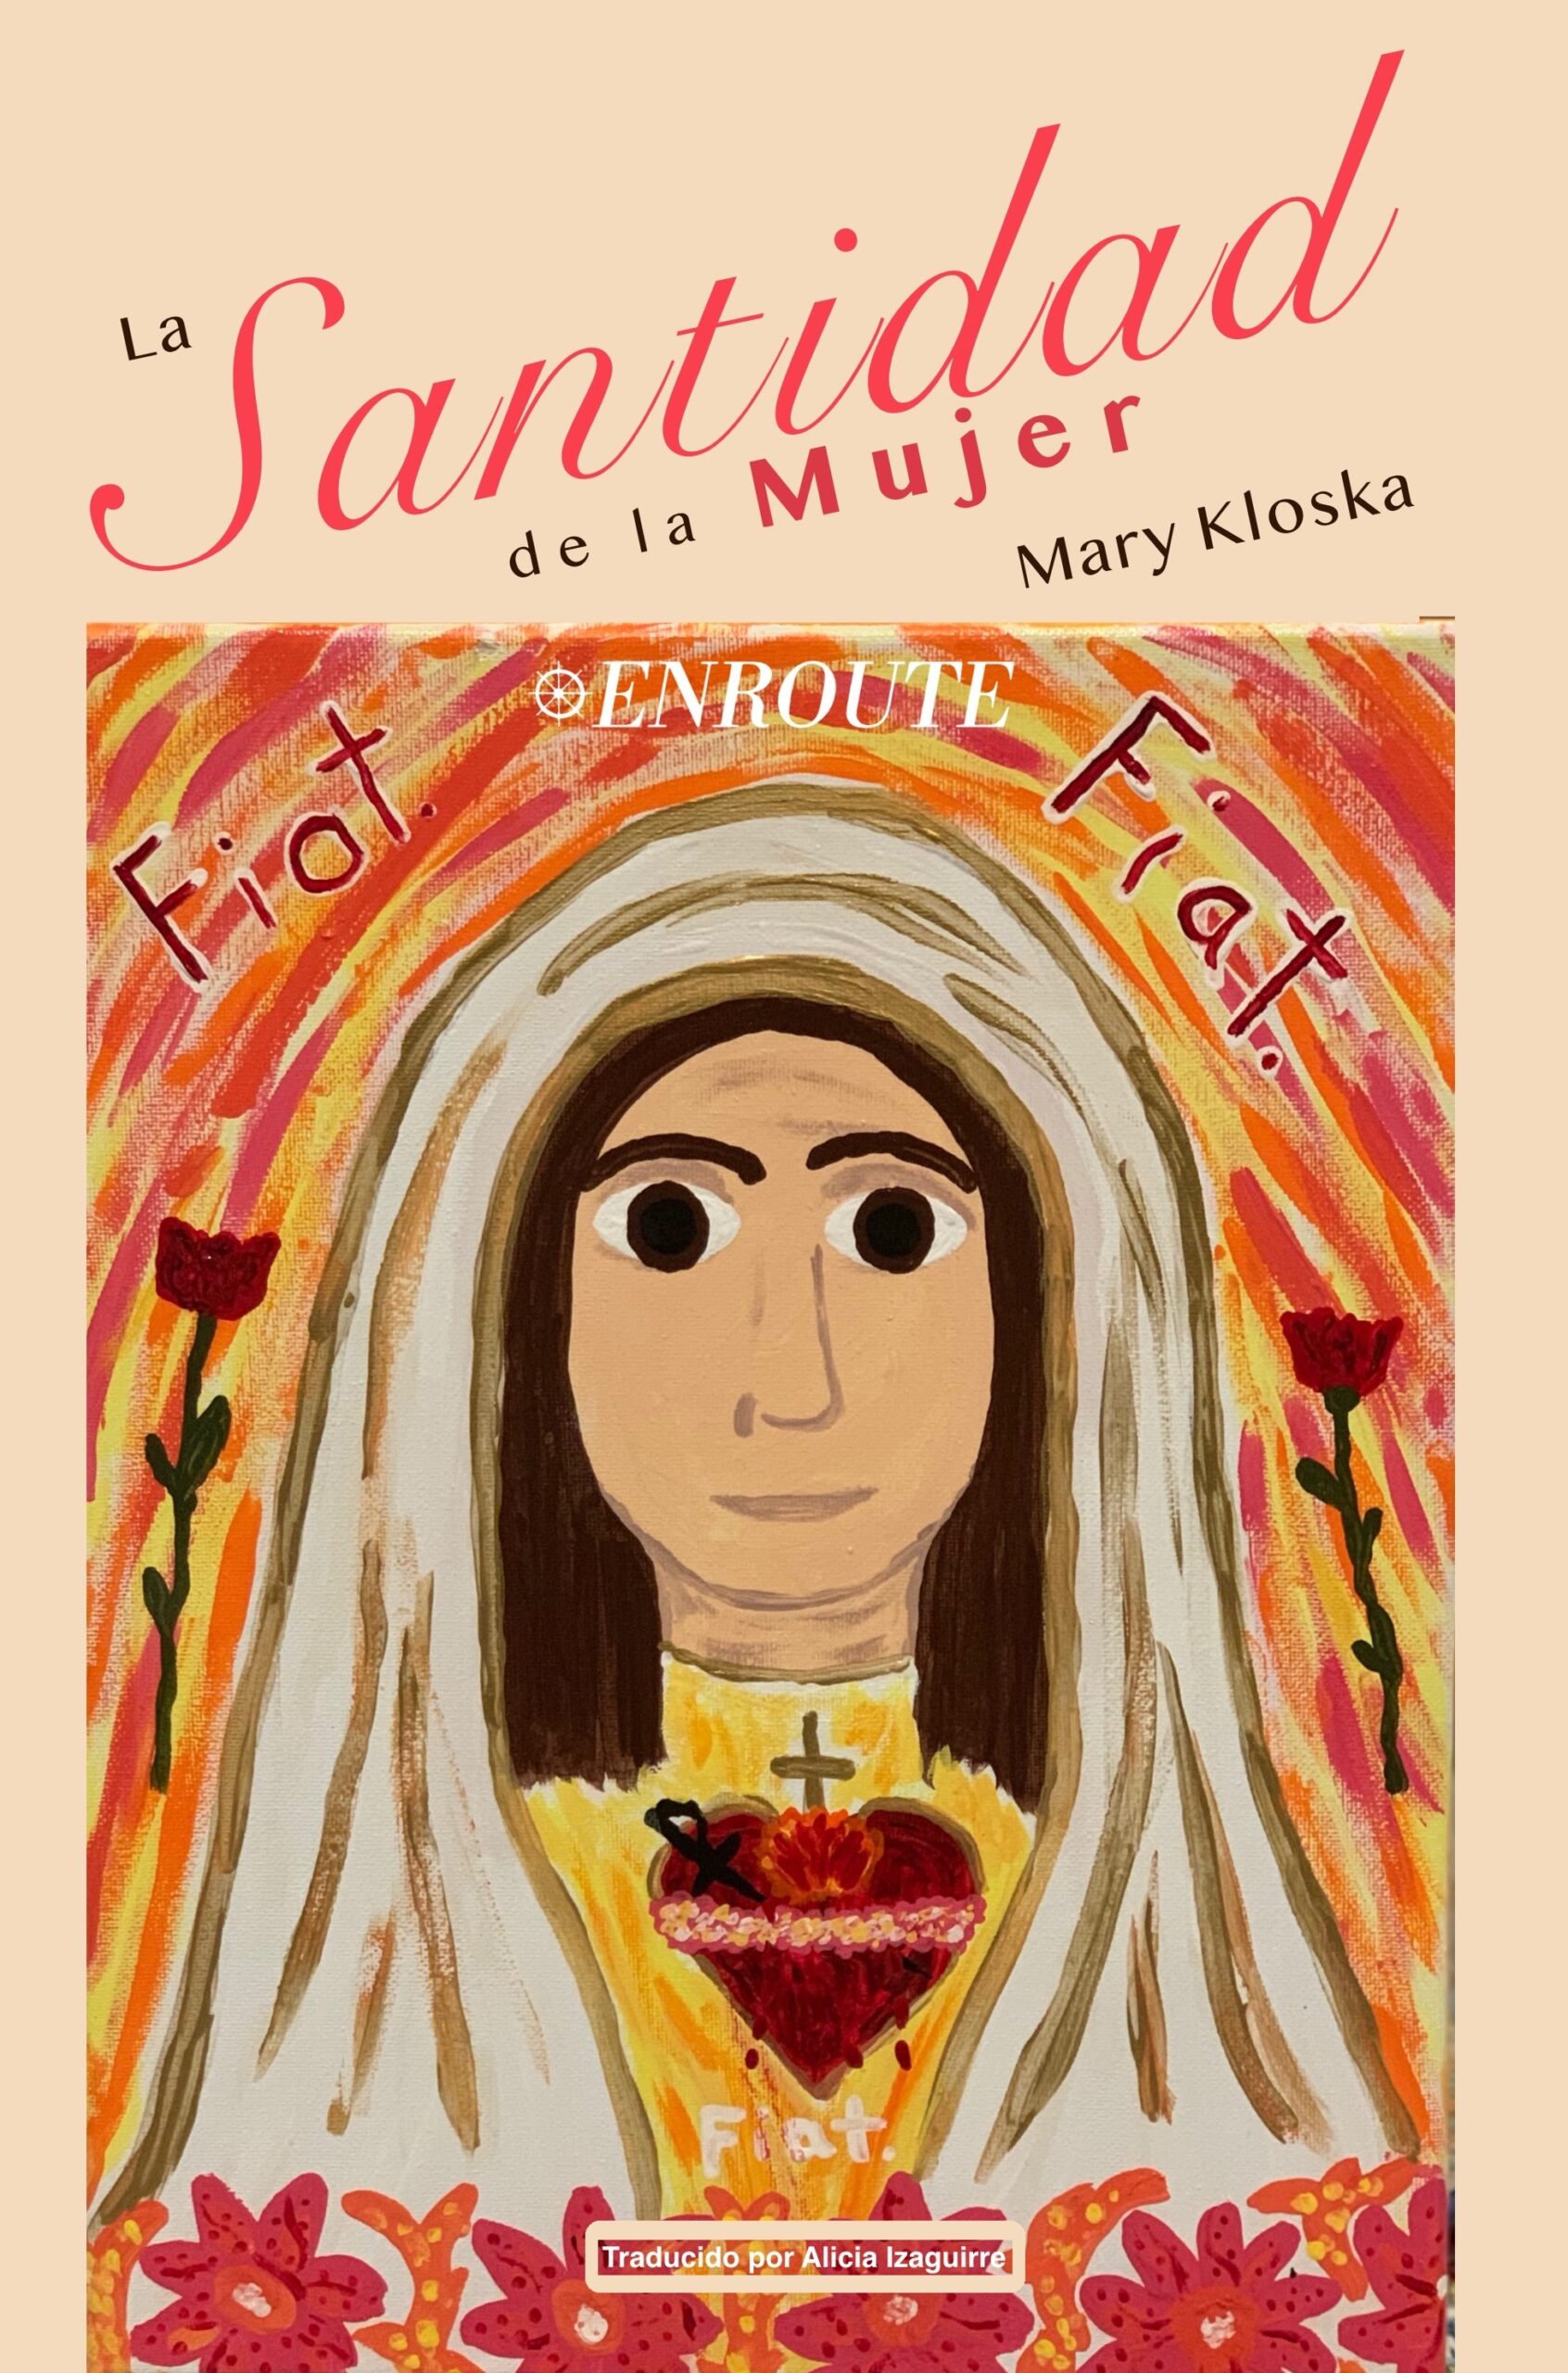 La Santidad de la Mujer by Mary Kloska